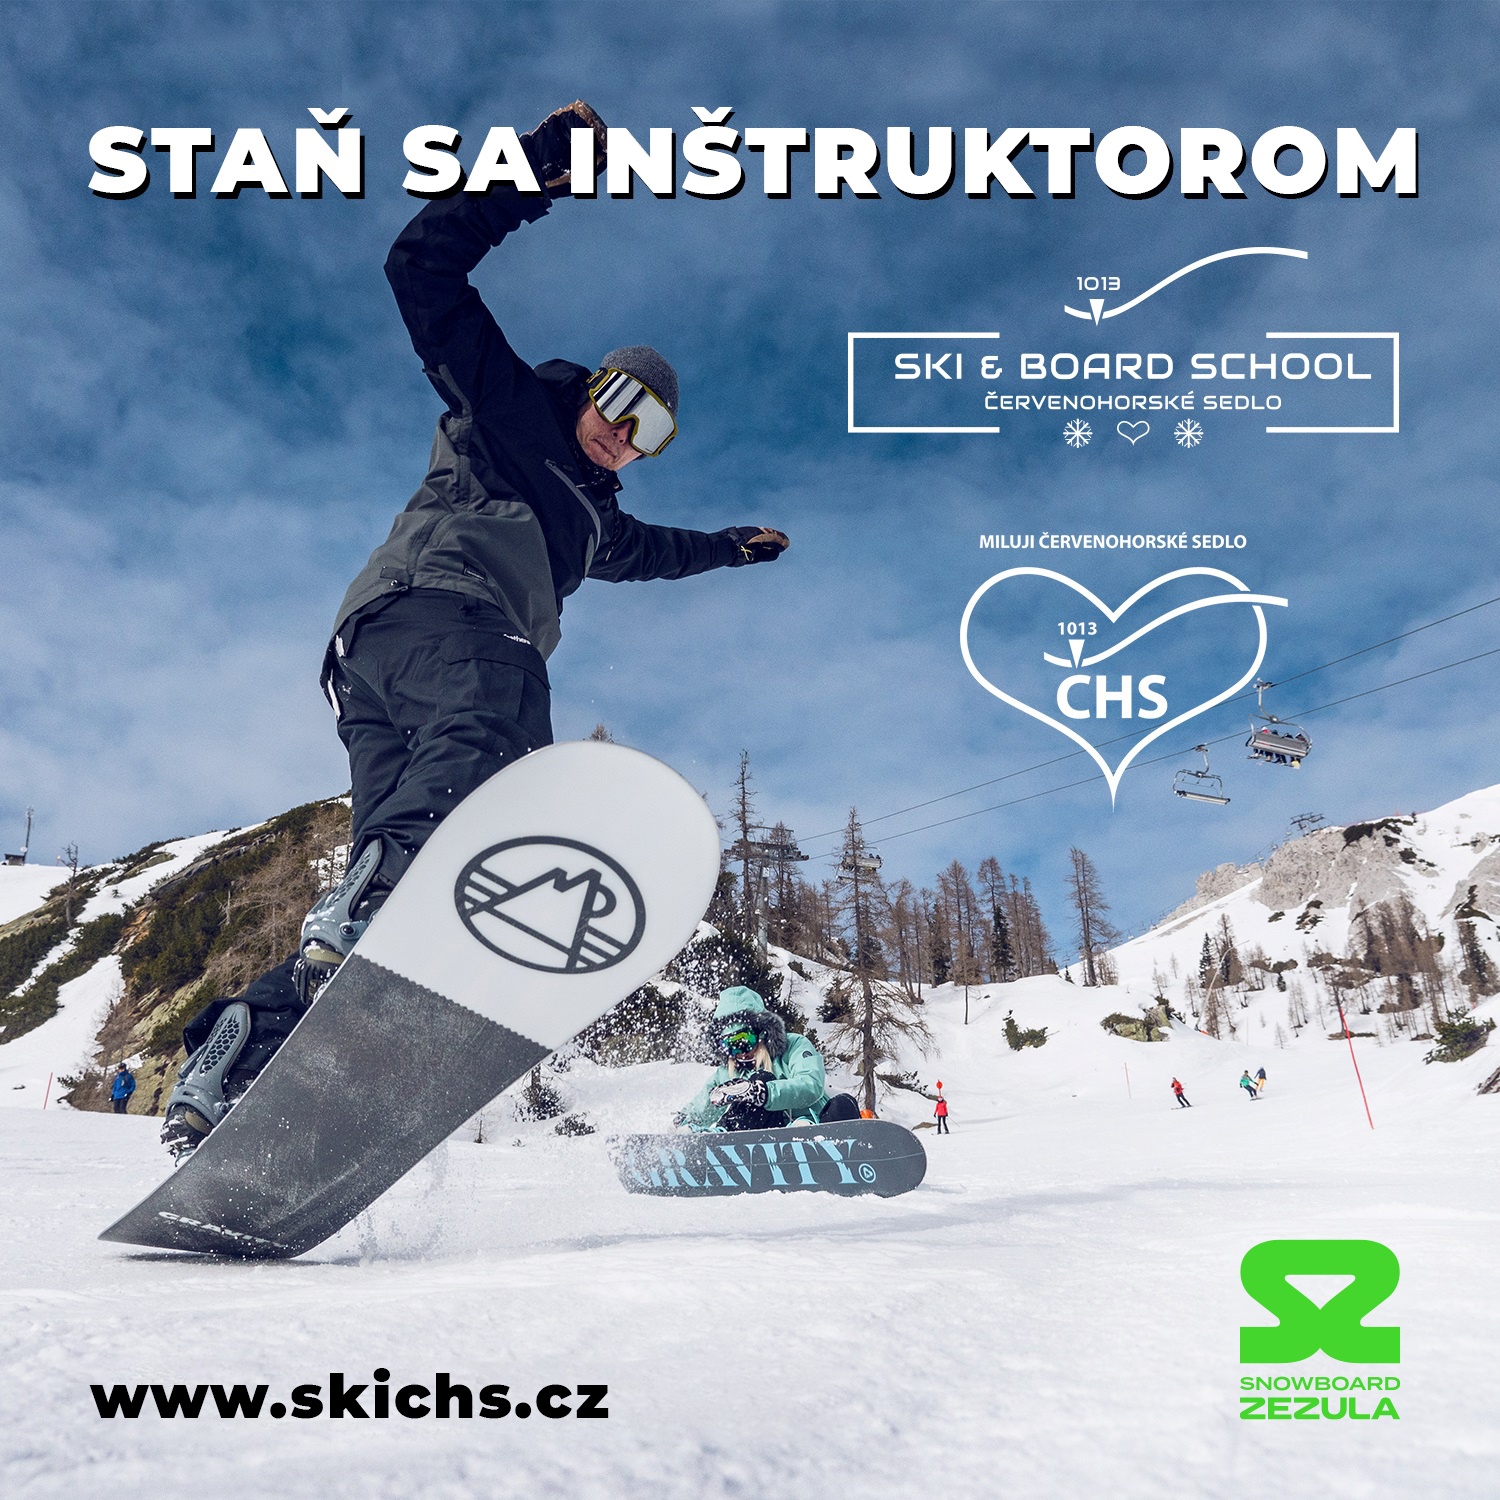 Staň sa inštruktorom lyžovania alebo snowboardingu a uži si zimu na horách!